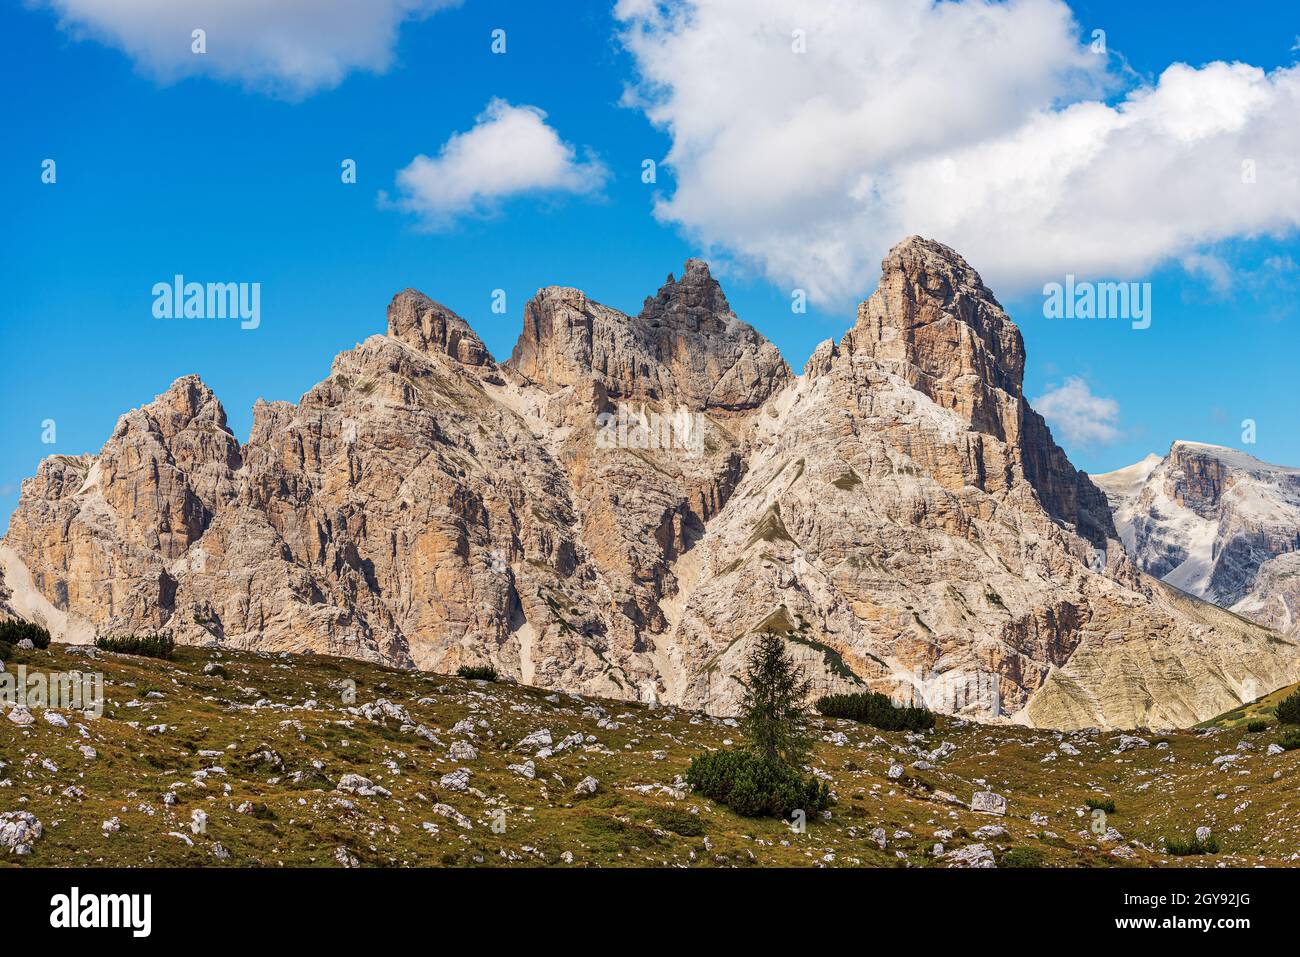 Mountain peaks of Sesto Dolomites near Tre Cime di Lavaredo, Croda dei Rondoi or Schwalbenkofel, Monte Rudo or Rautkofel, Cima Piatta Alta, Italy. Stock Photo